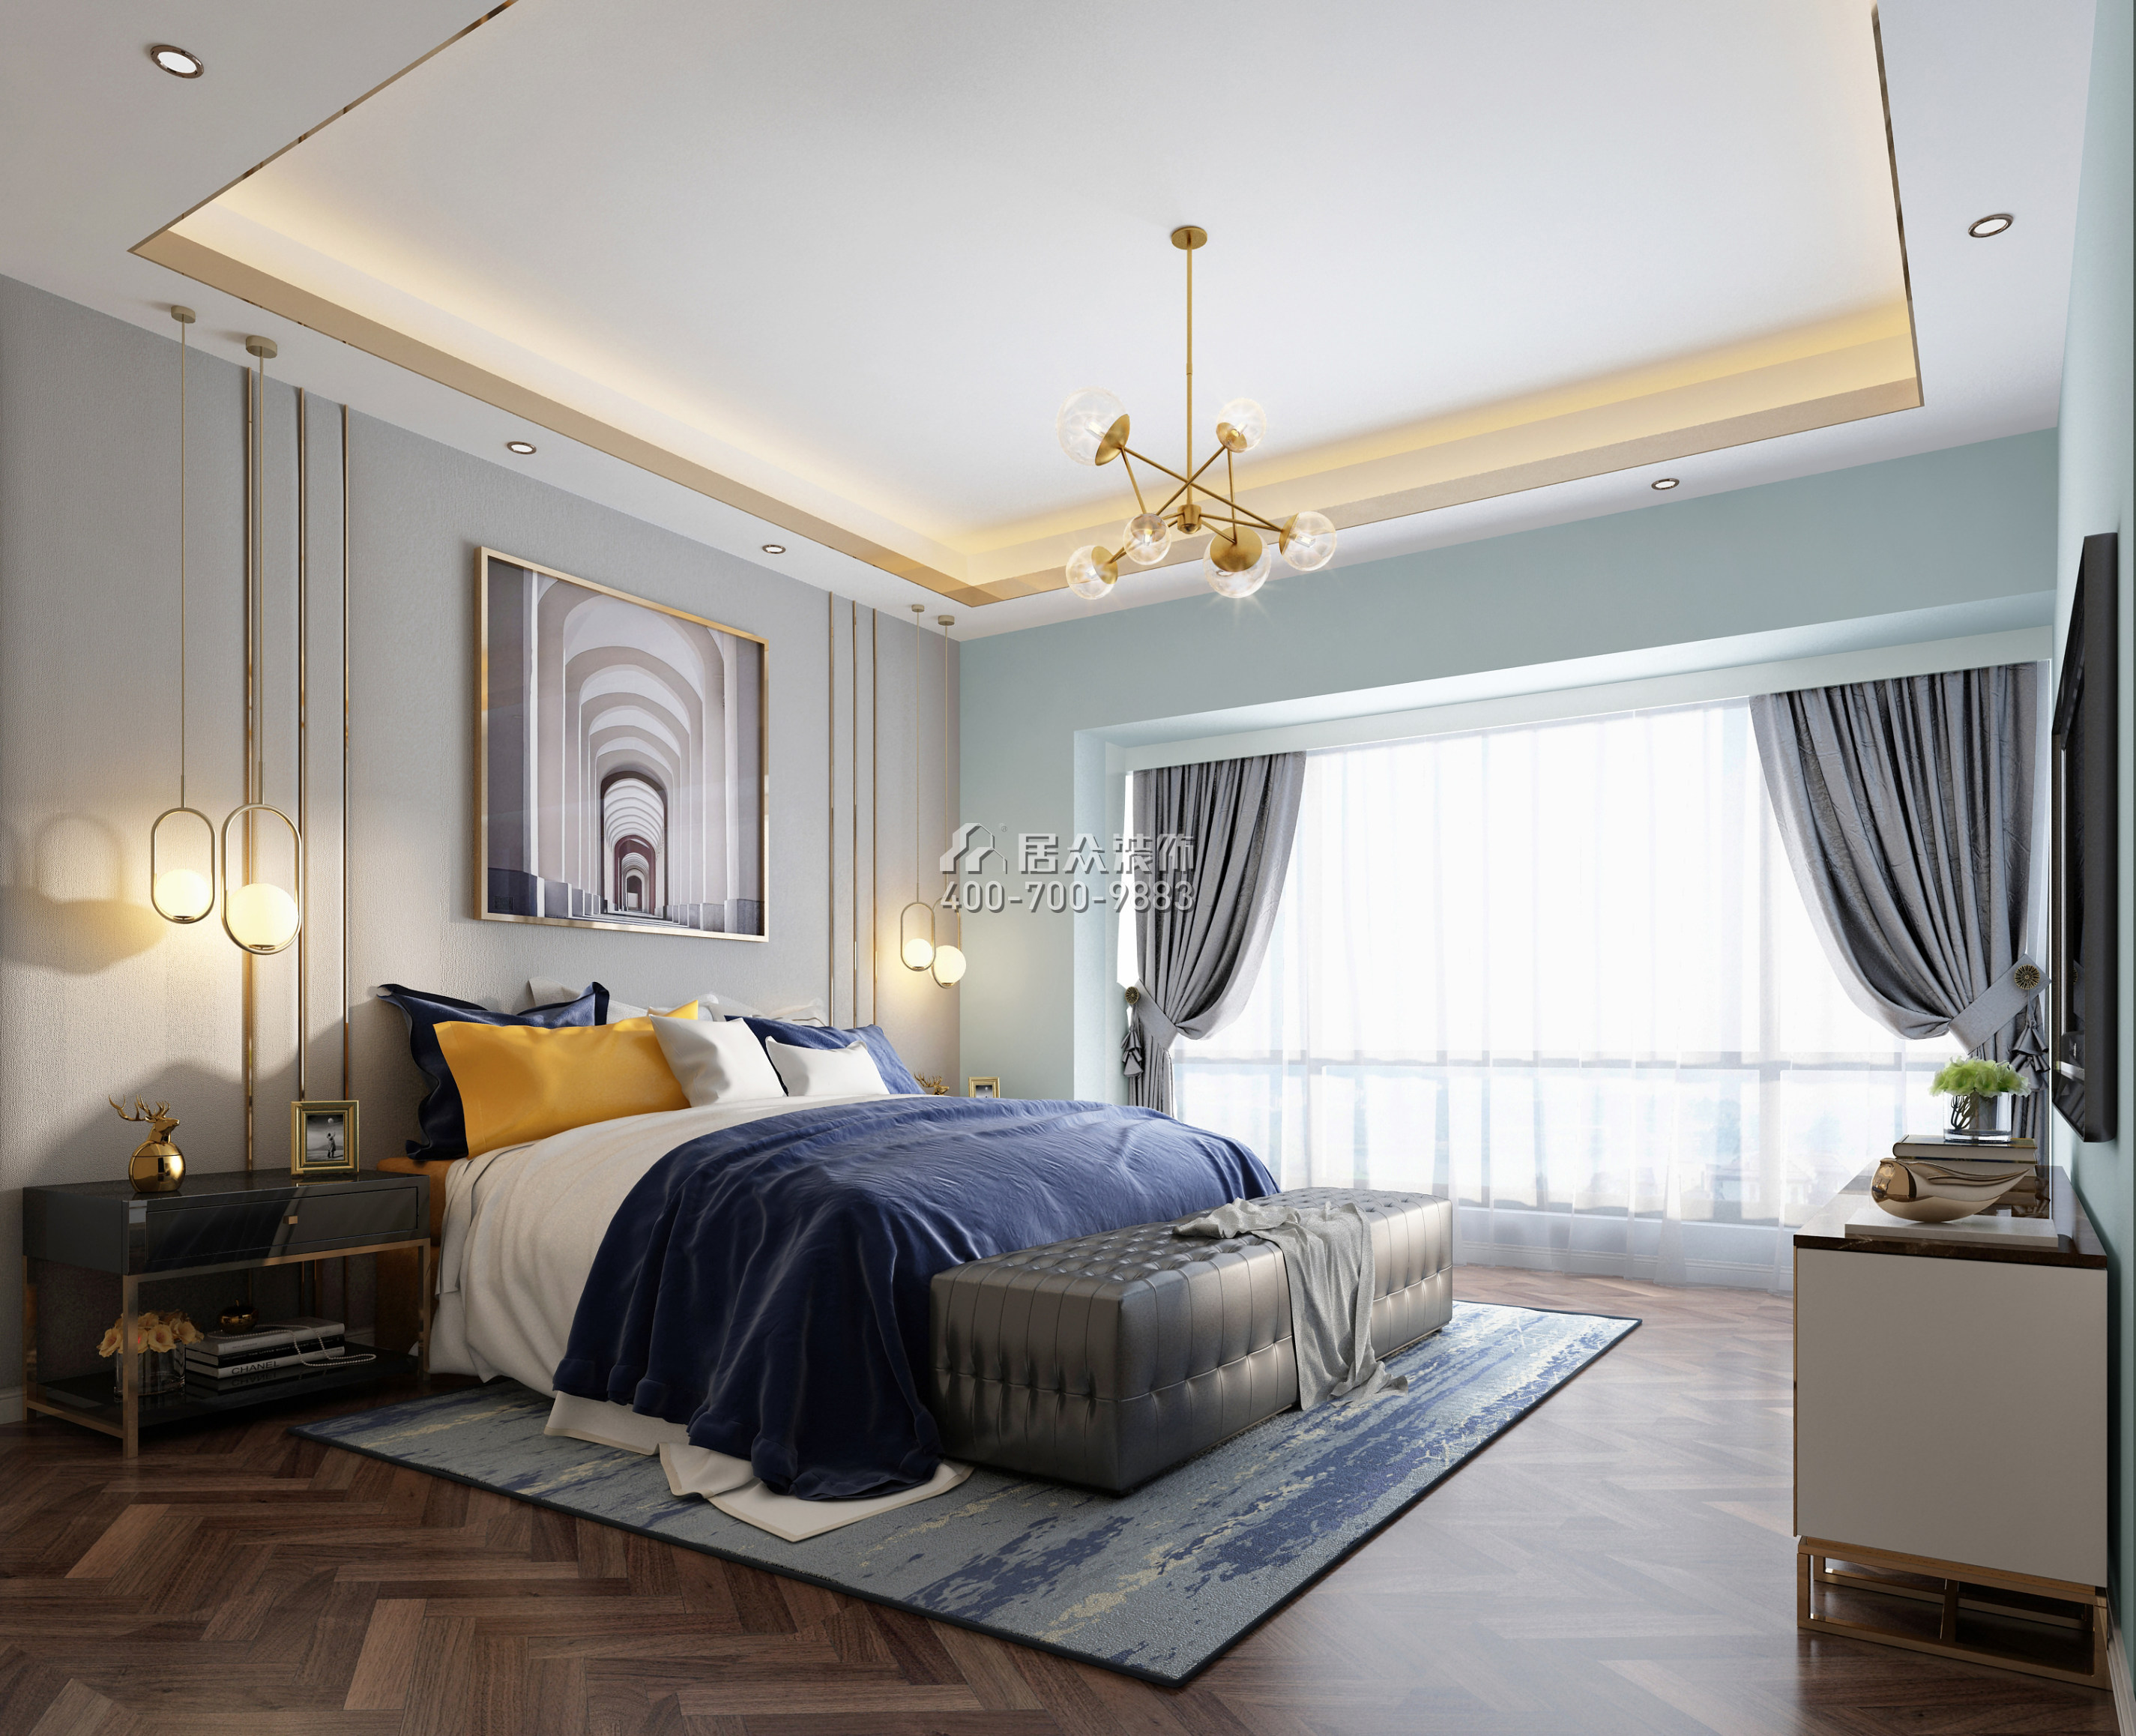 山语清晖140平方米新古典风格平层户型卧室装修效果图